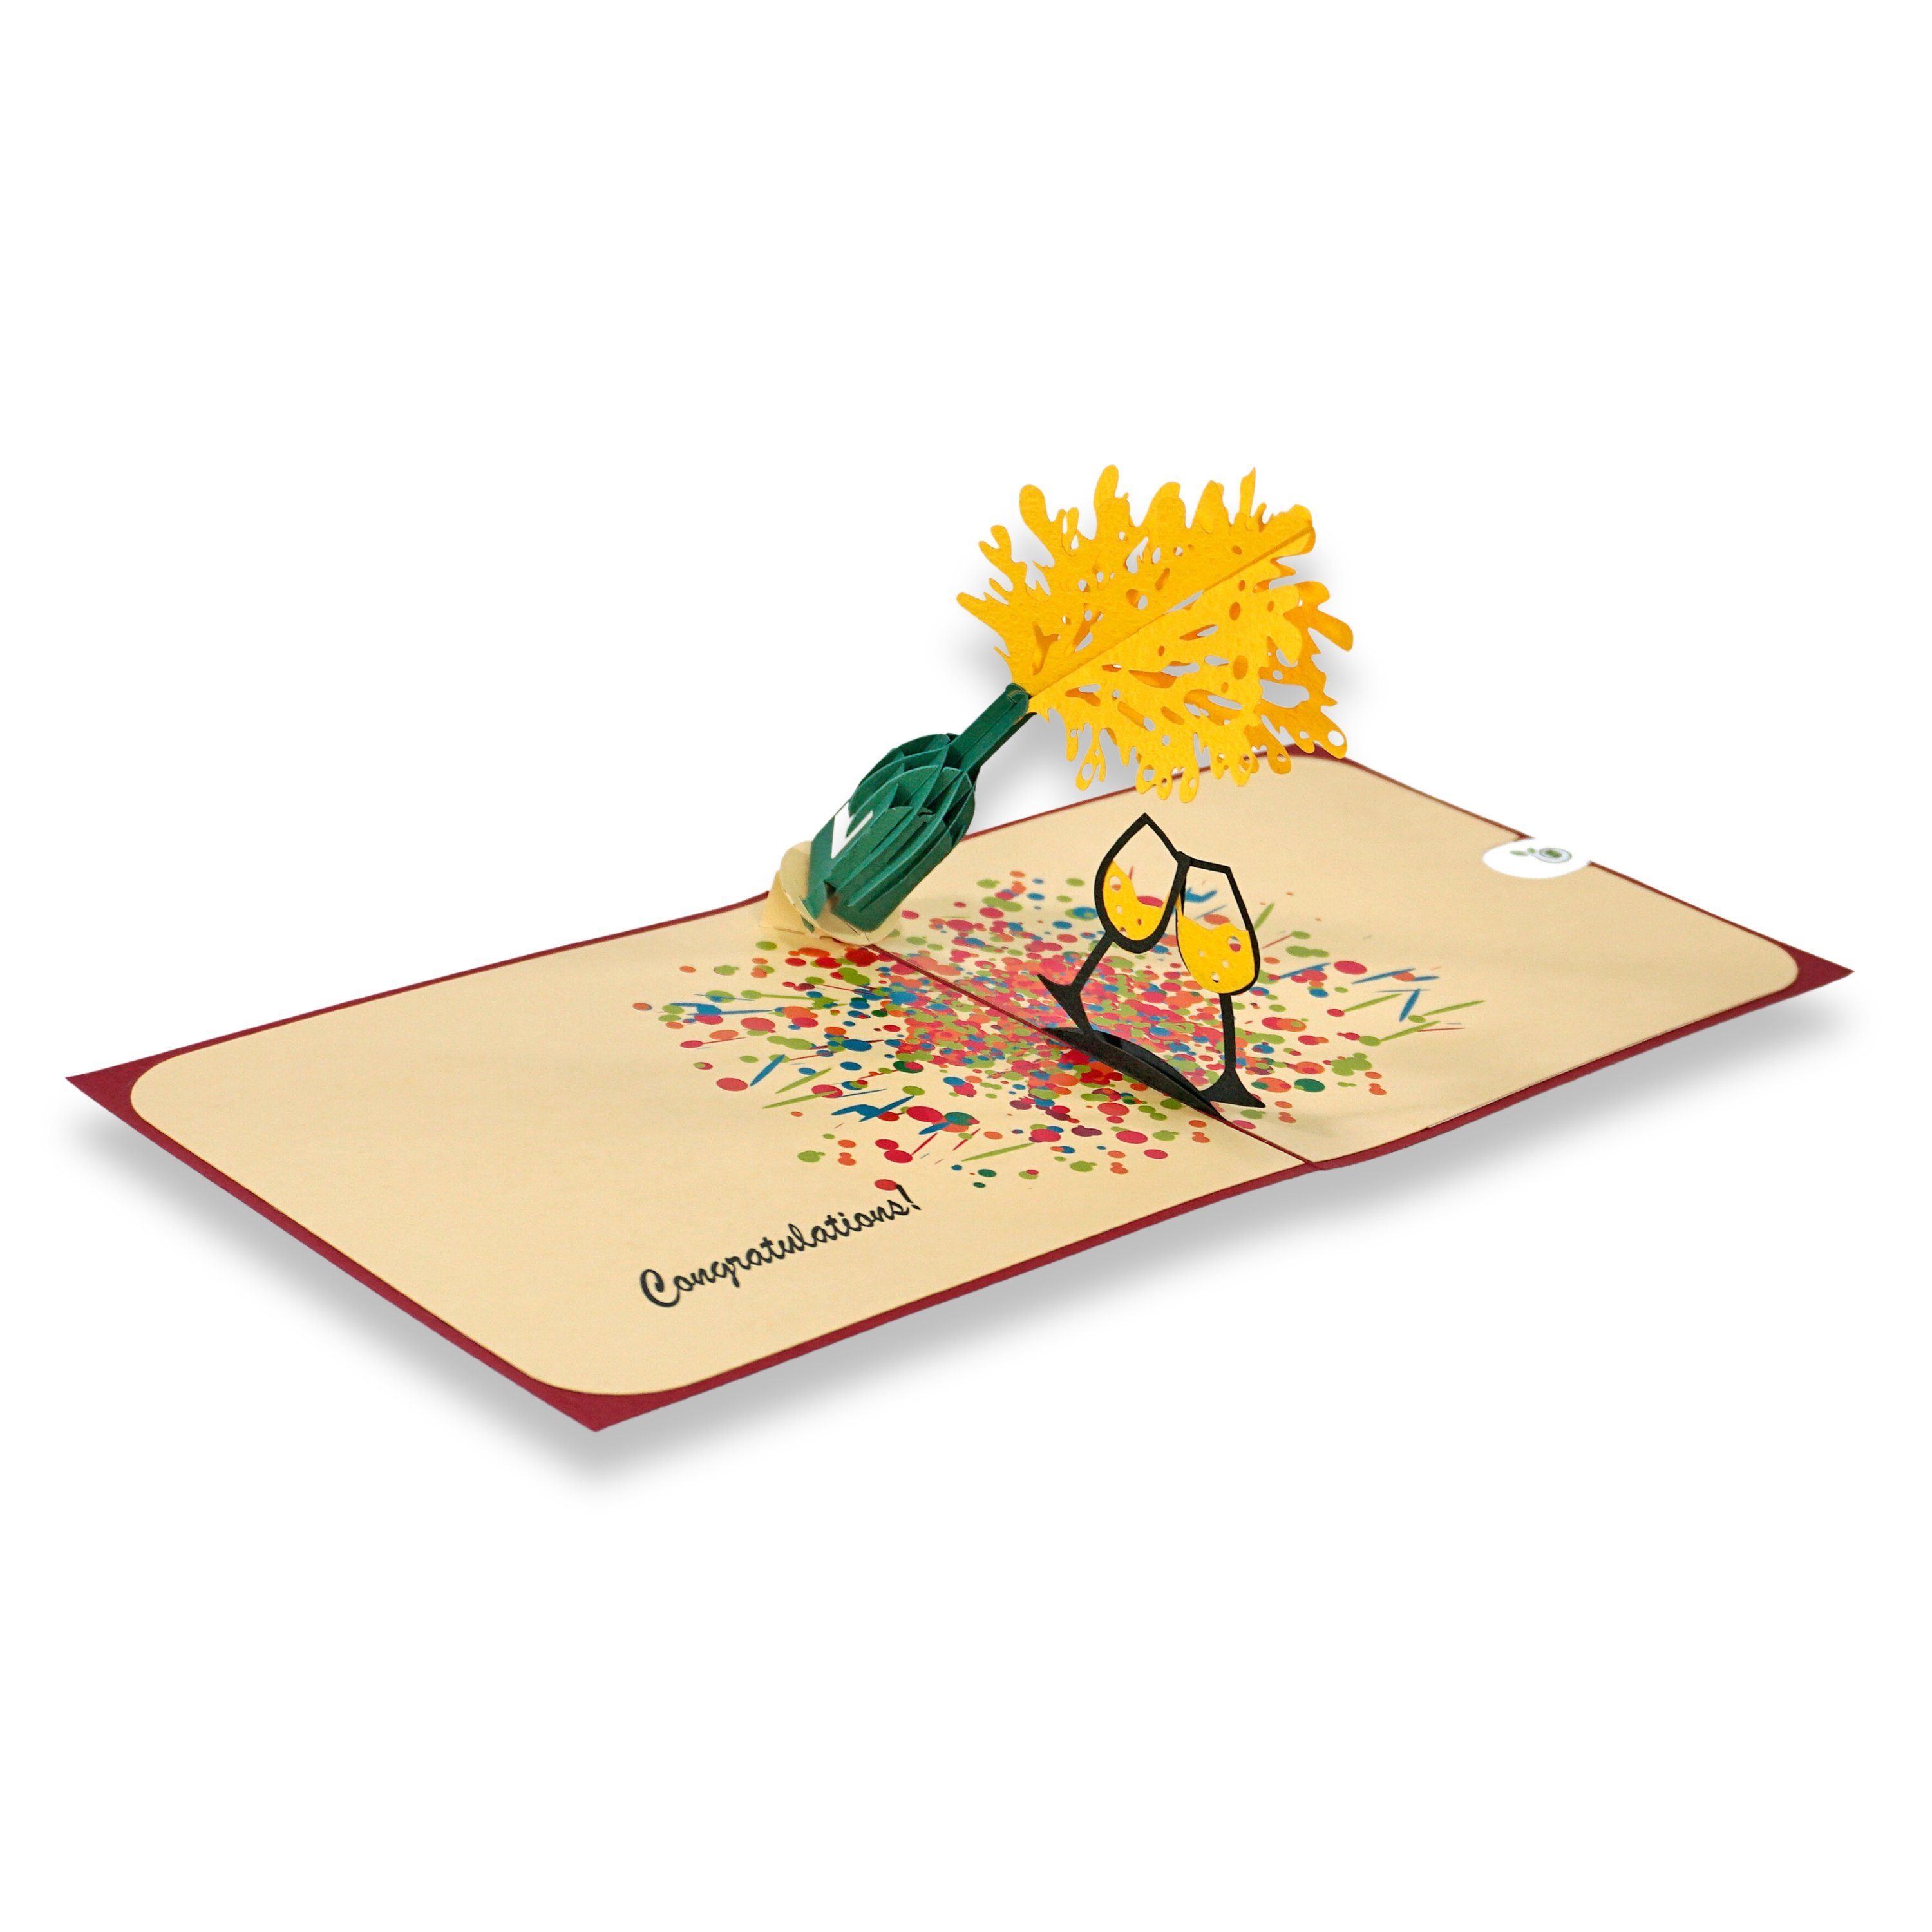 Umschlag 3D paperdora Grußkarte „Glückwünsche“ Pop-Up-Karte und Glückwunschkarte Glückwunsch Wachssiegel, Geschenk mit